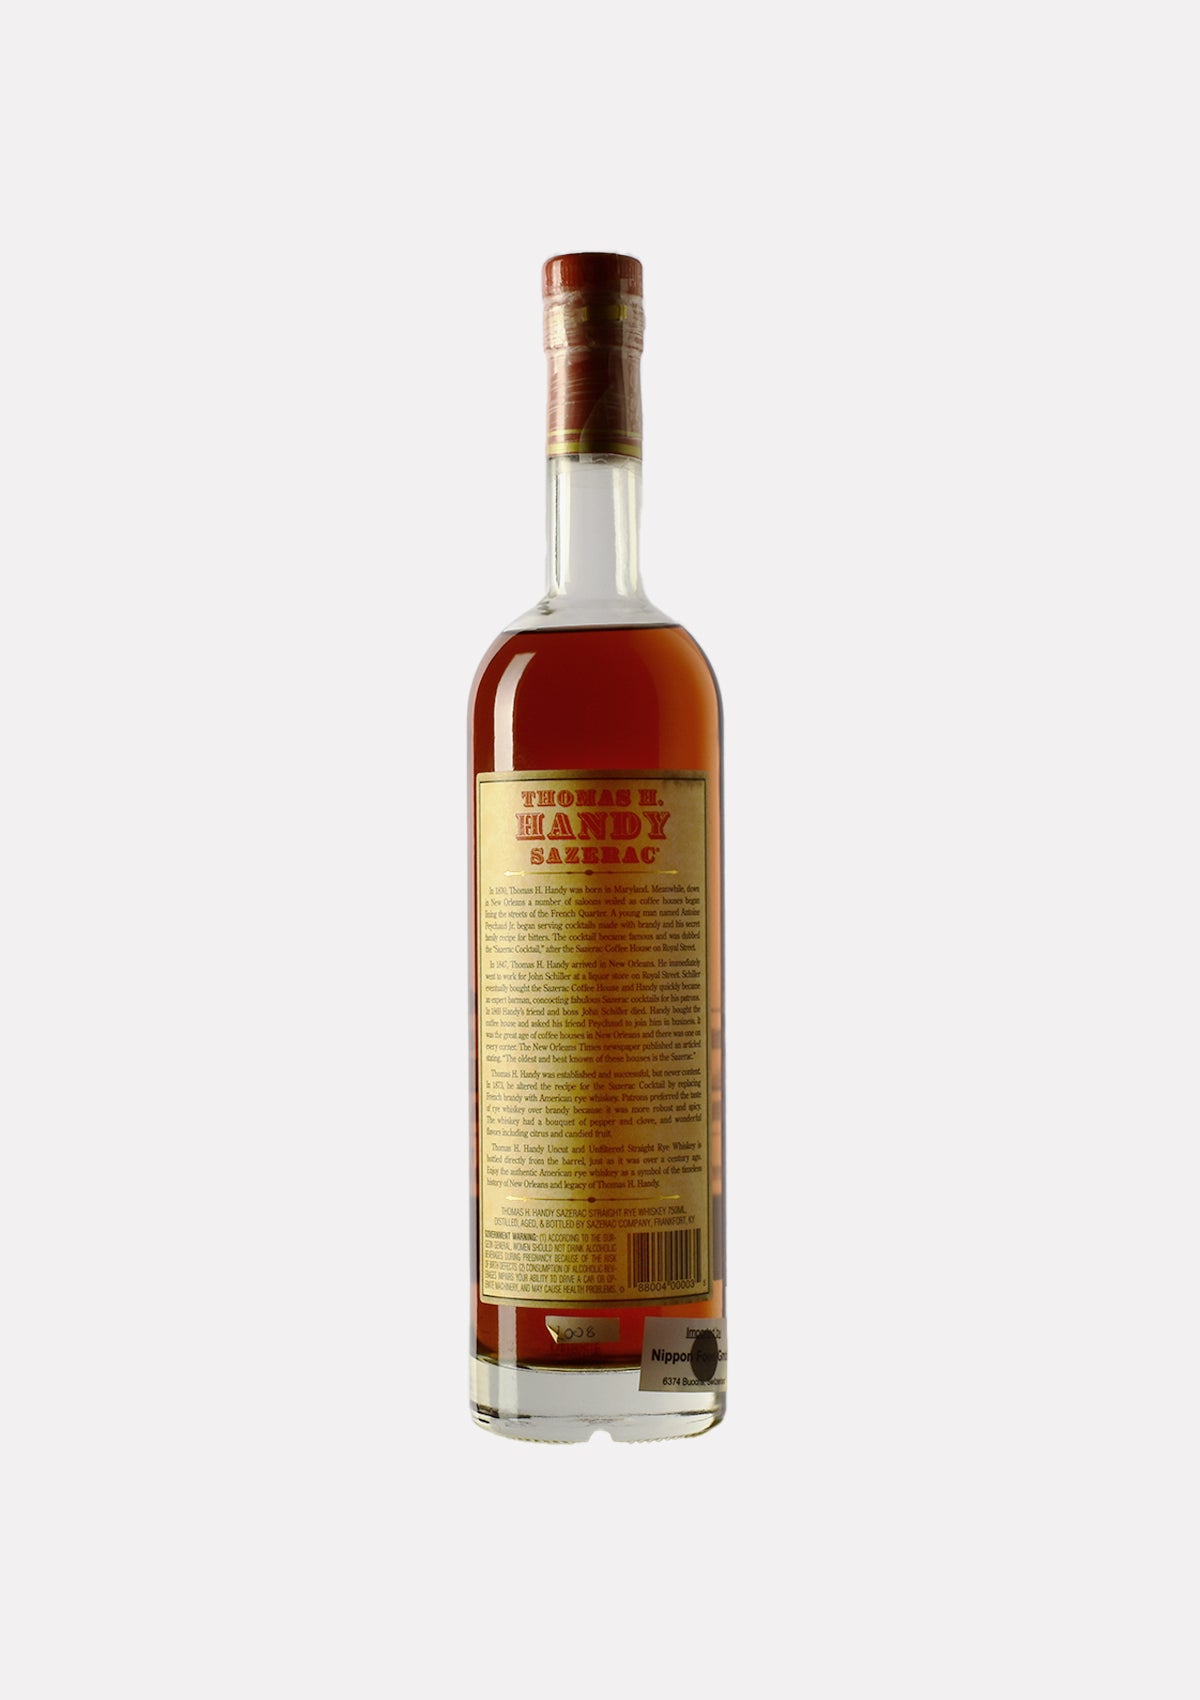 Thomas H. Handy Sazerac Rye Whiskey